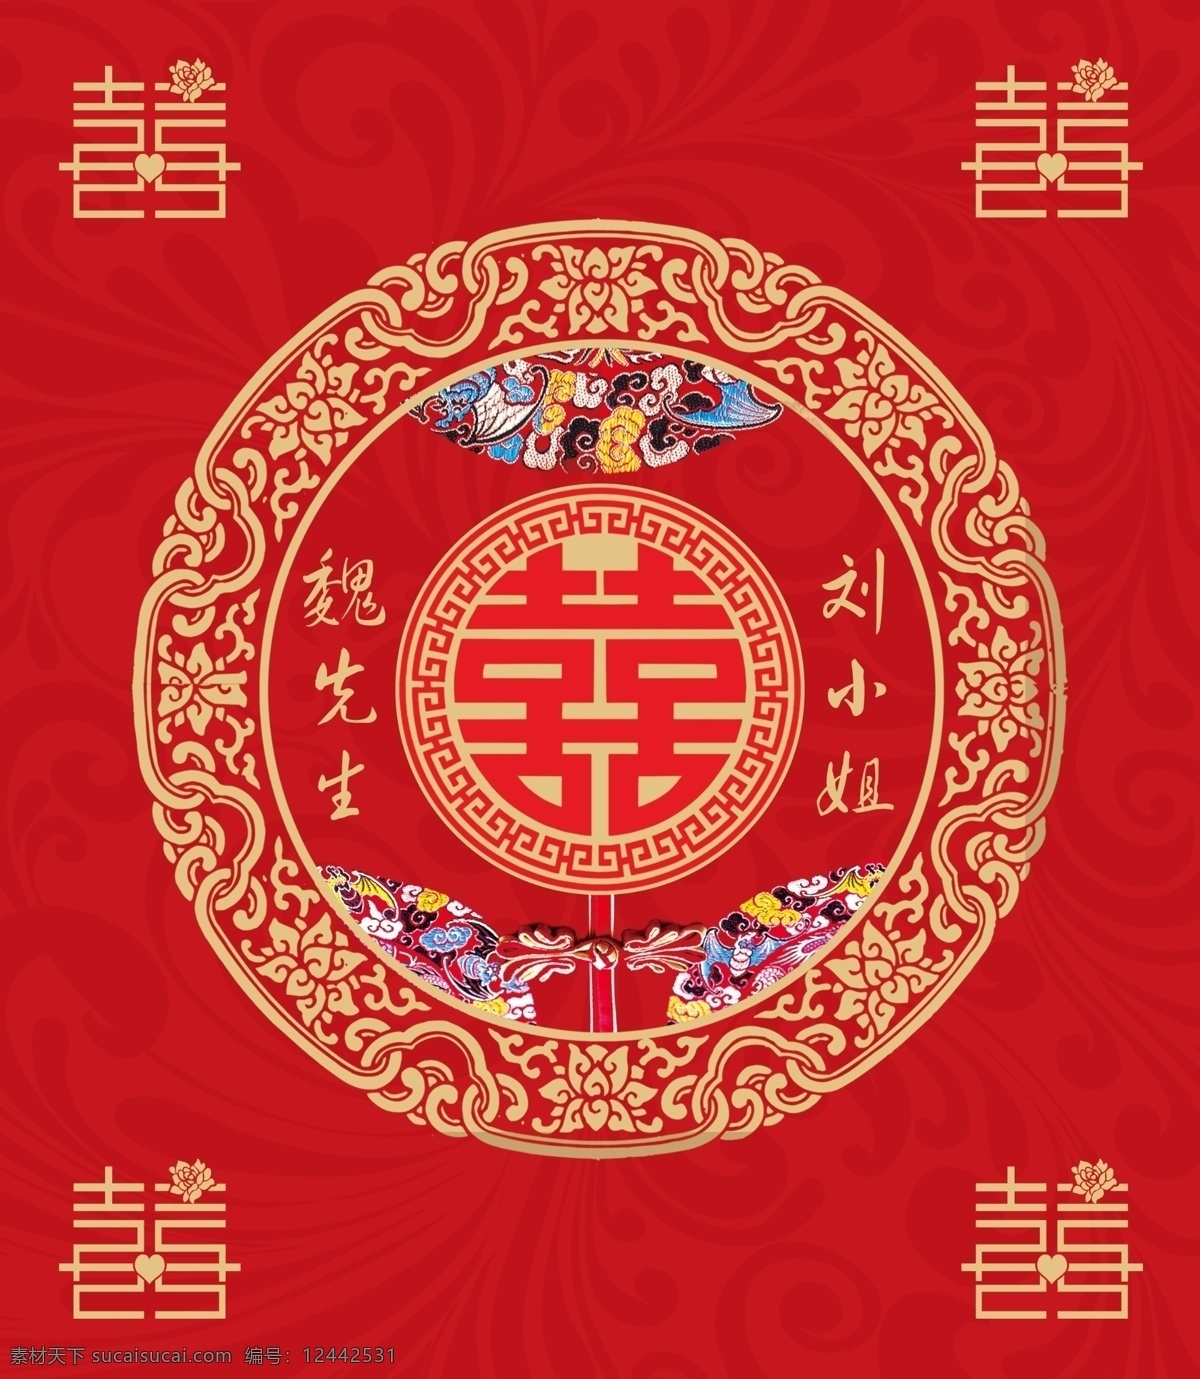 中式 婚礼 中式婚礼 红色婚礼 婚礼背景 中国风 中国婚礼 红色主题 主题婚礼 婚庆背景 分层